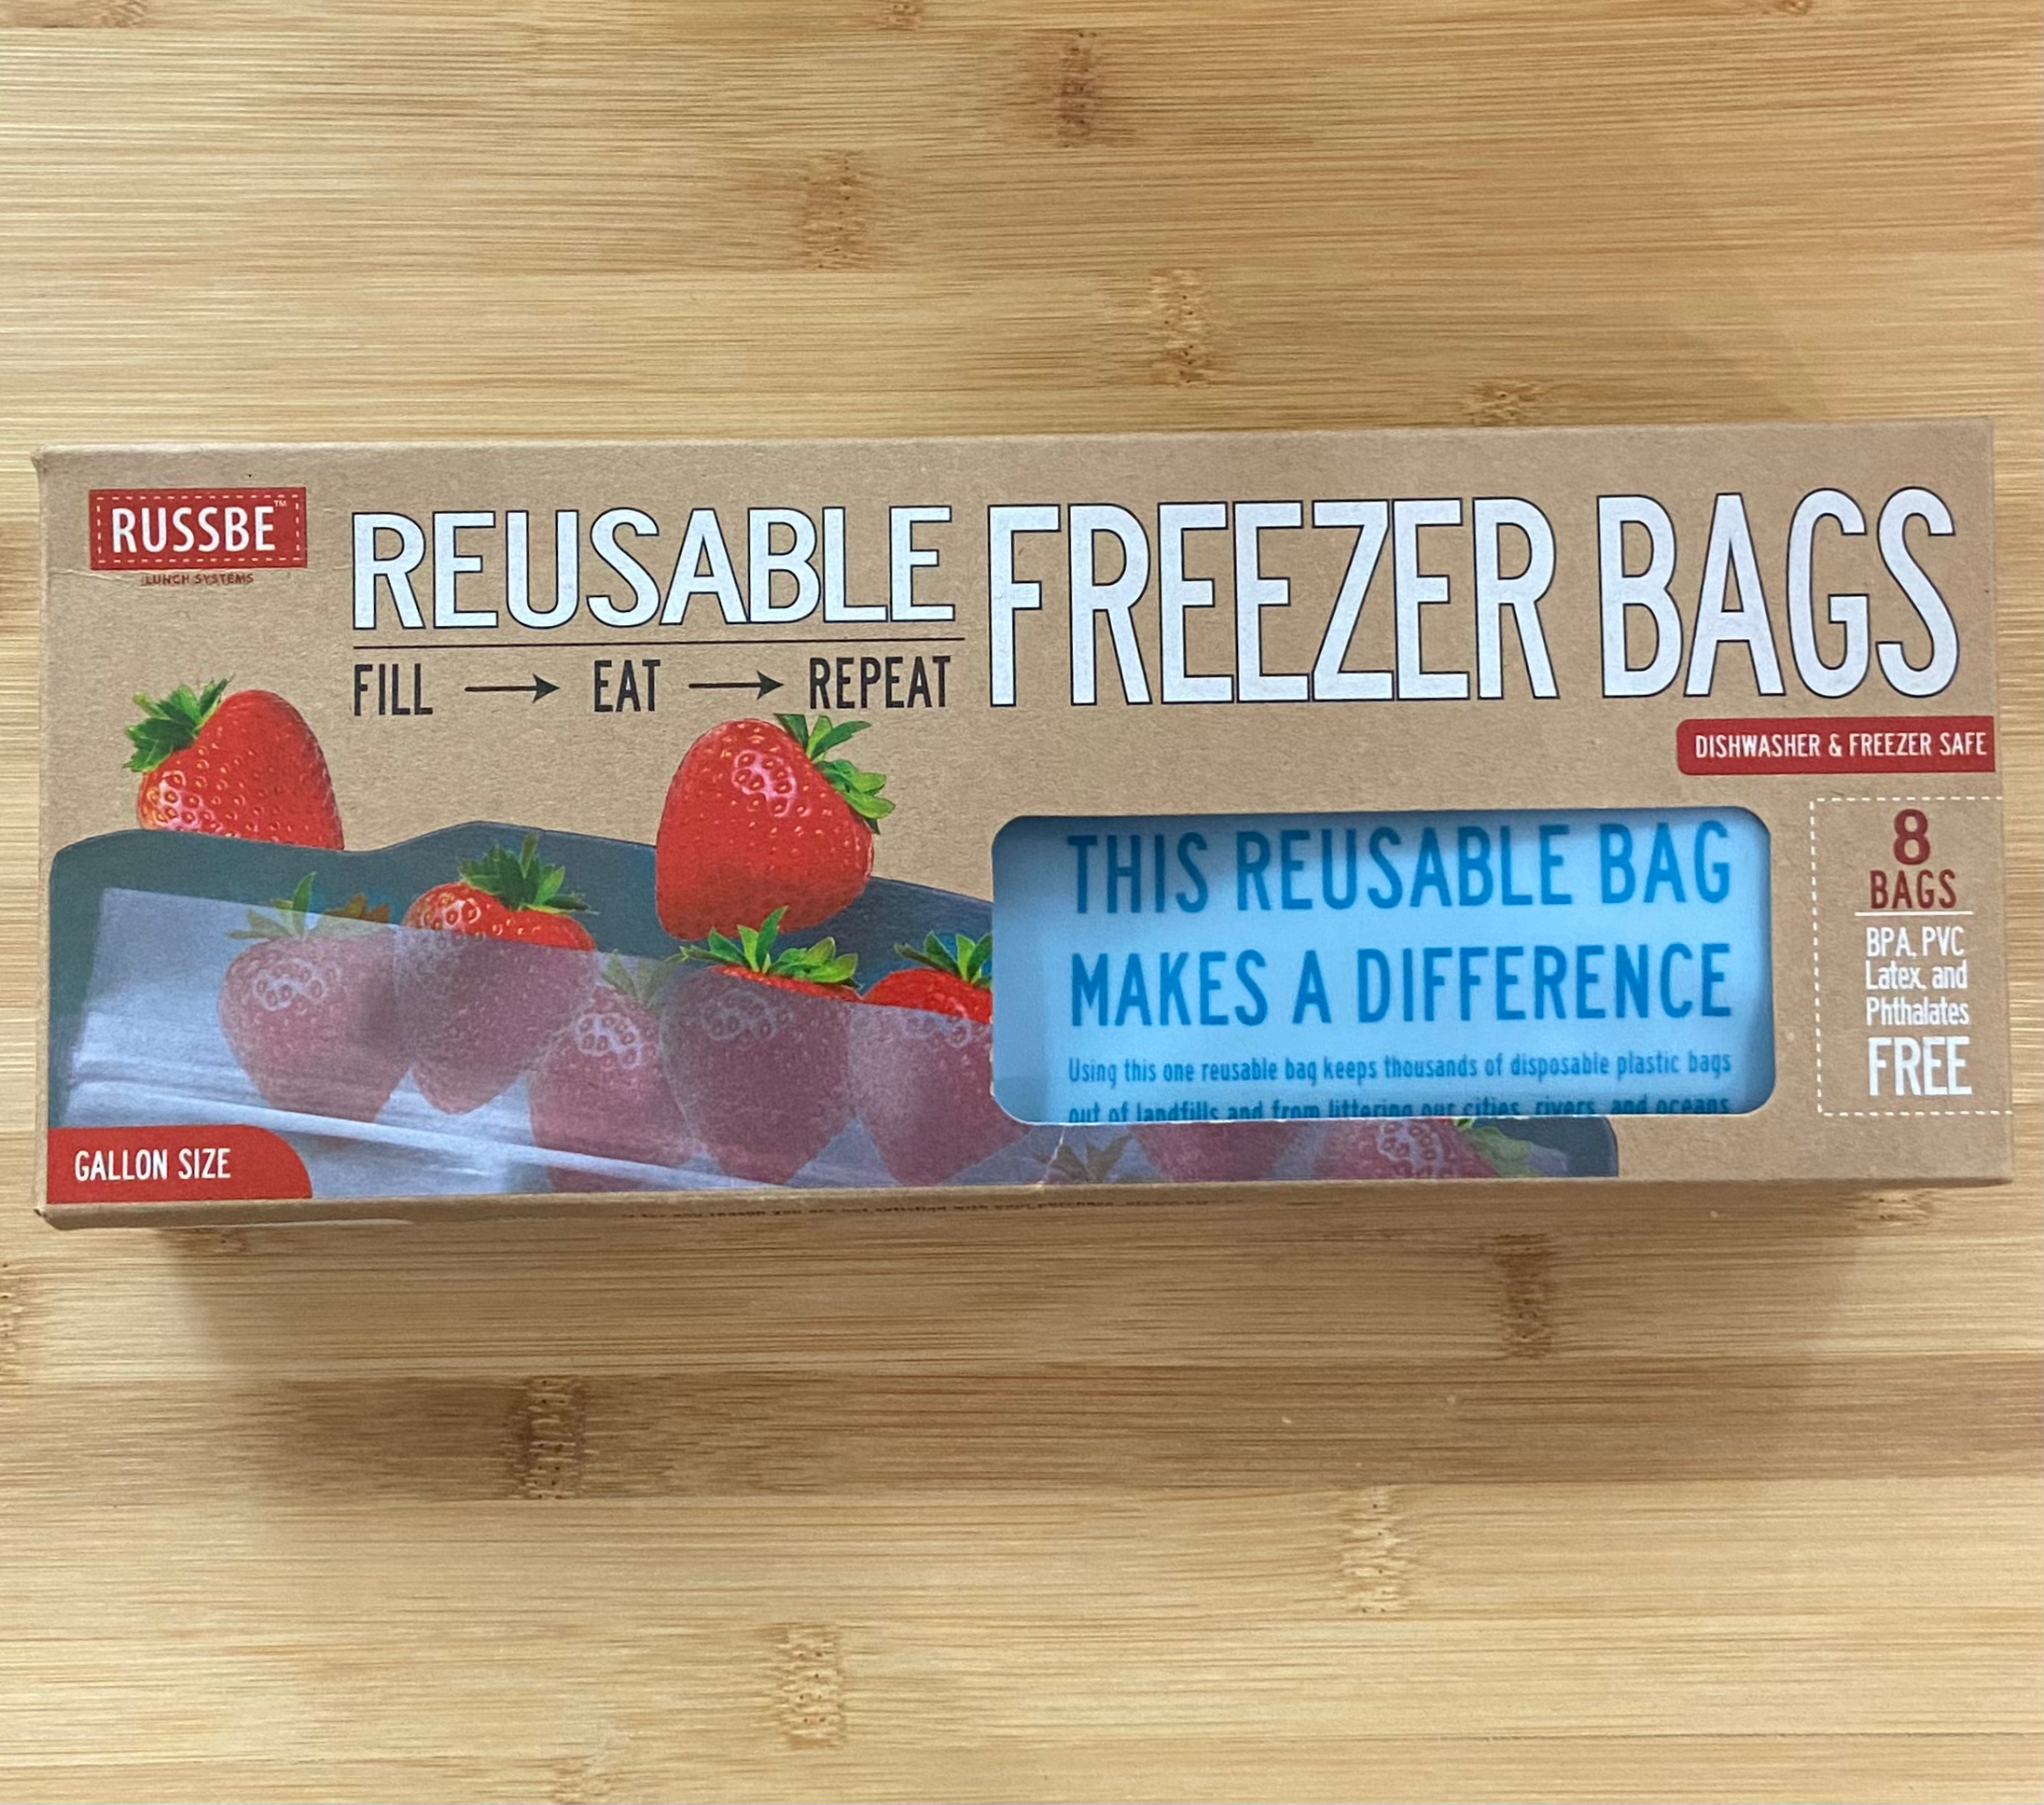 RUSSBEE Reusable Freezer Bags 8 Bags